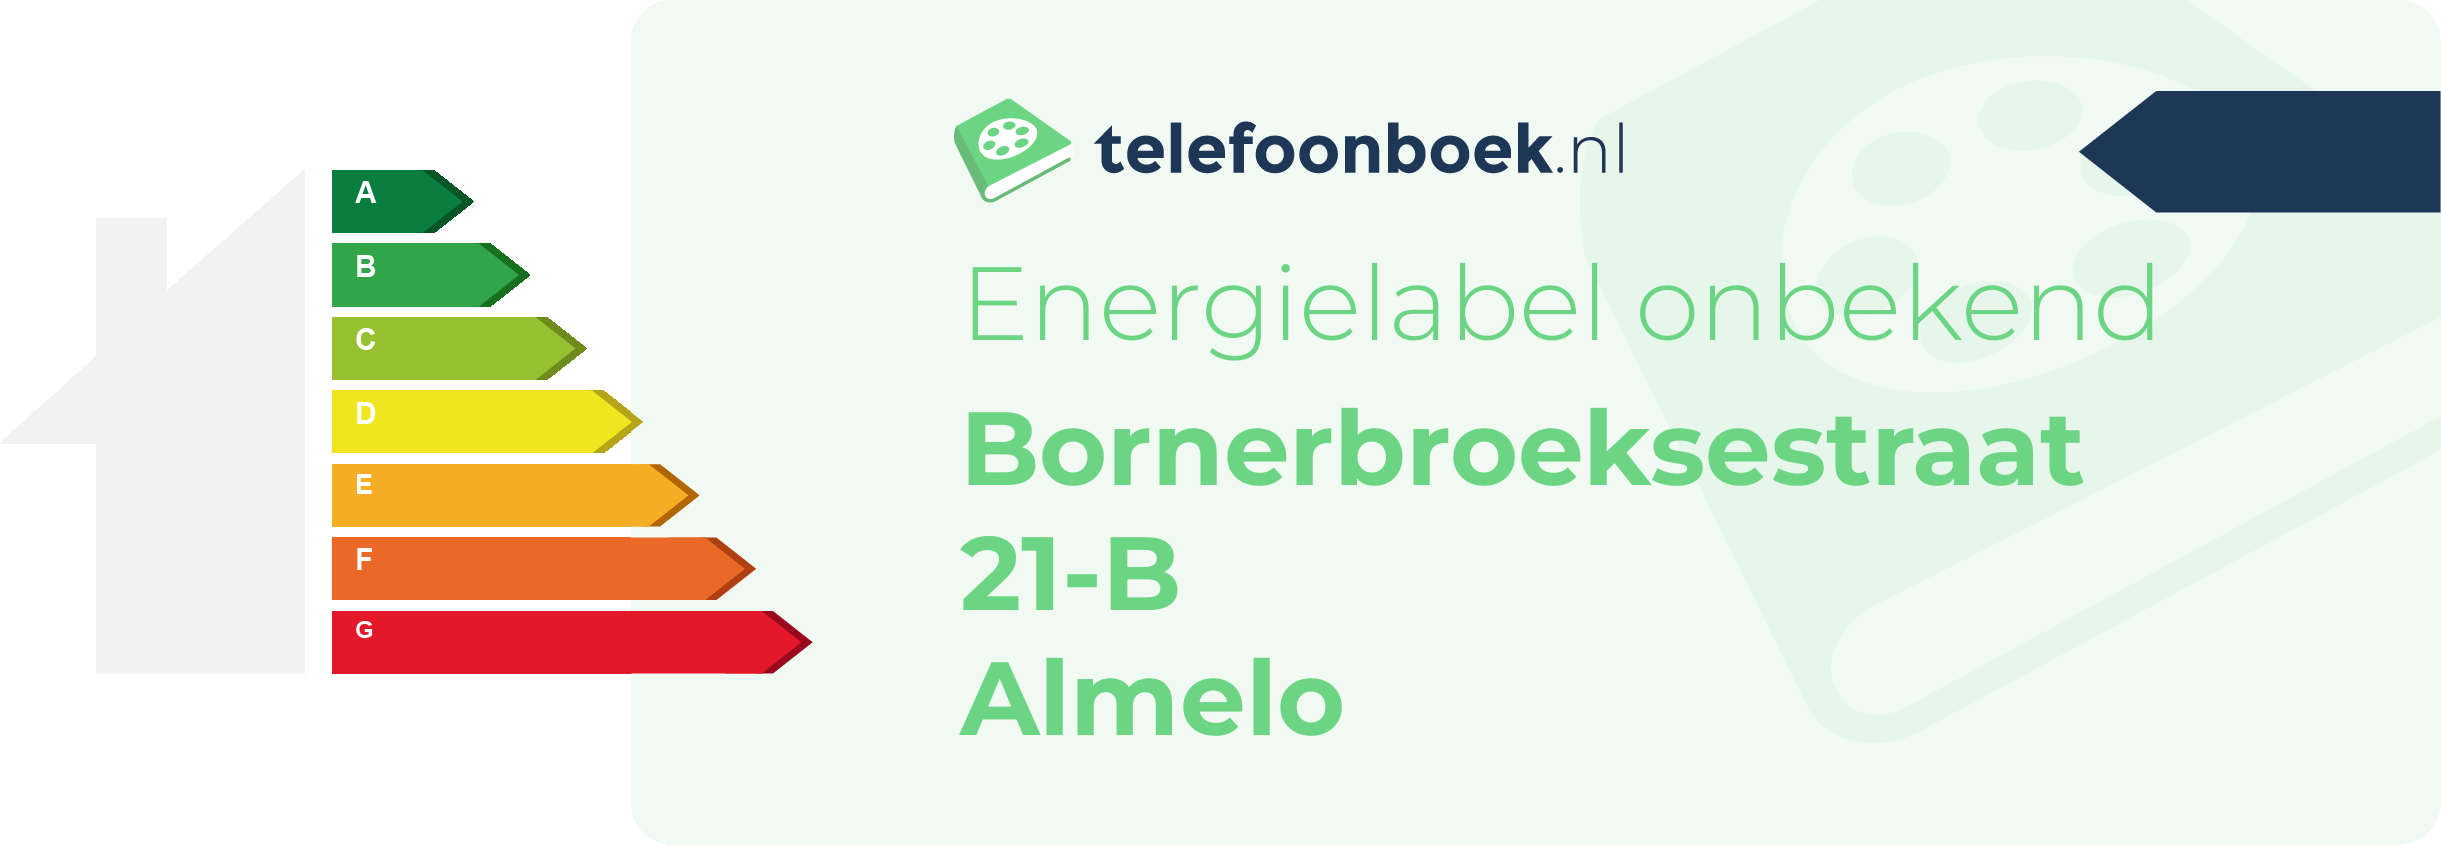 Energielabel Bornerbroeksestraat 21-B Almelo